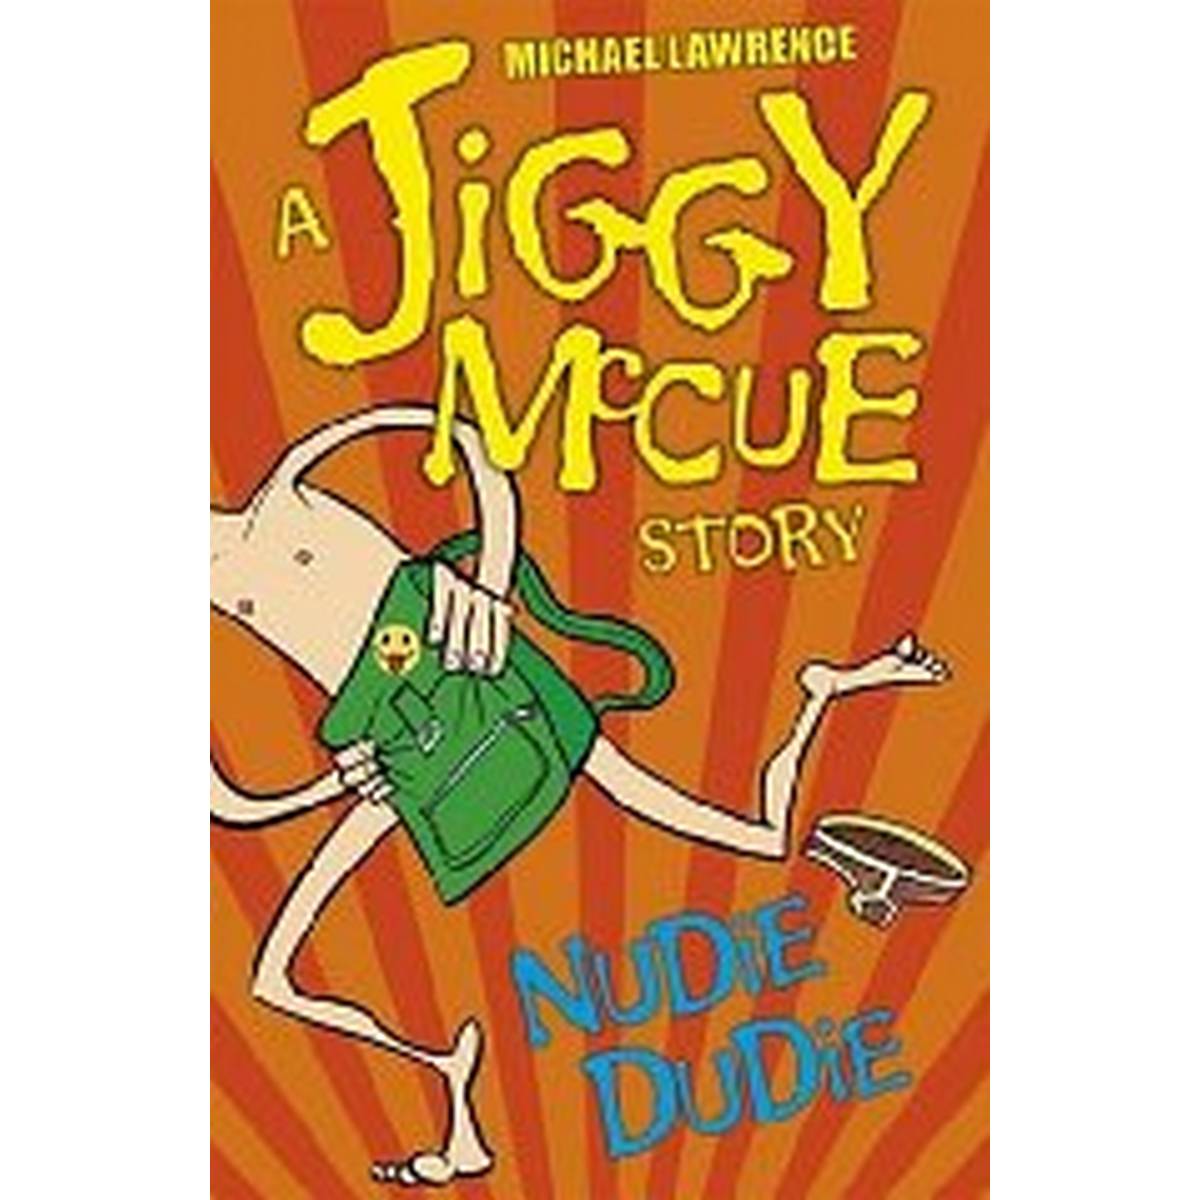 Nudie Dudie (Jiggy McCue)